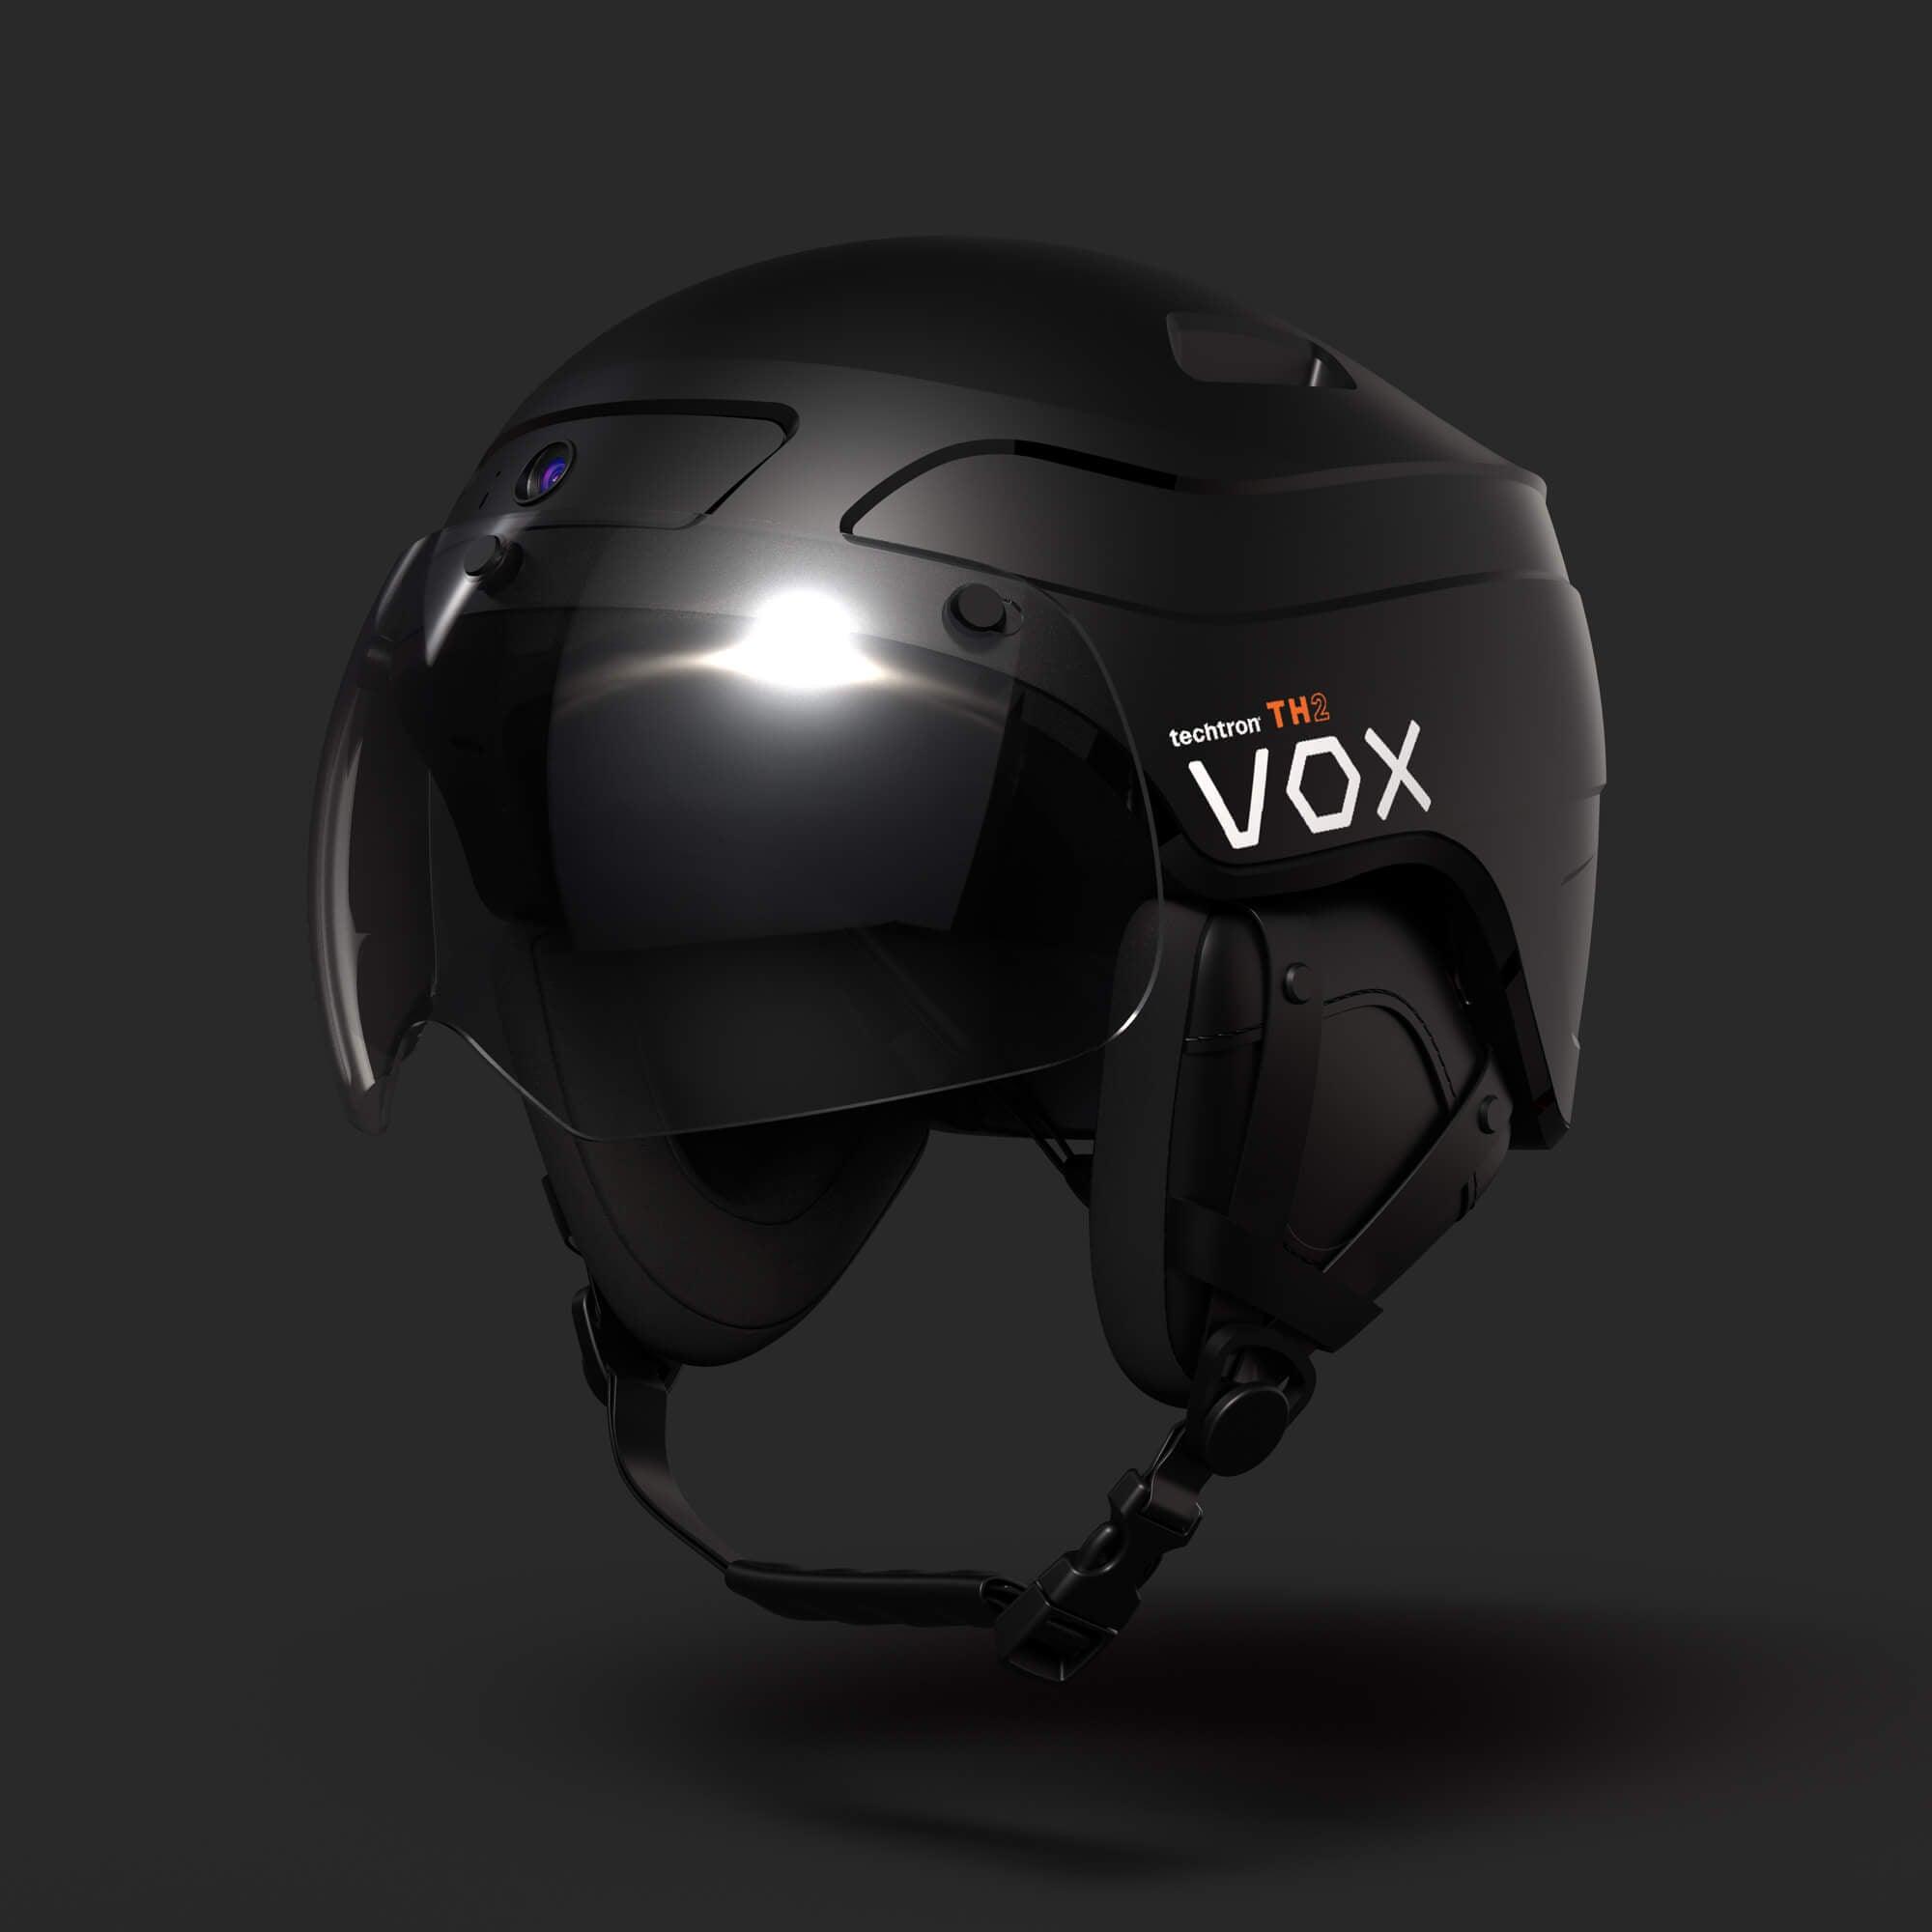 techtron® TH2 VOX - Voice Controlled Smart Helmet techtron